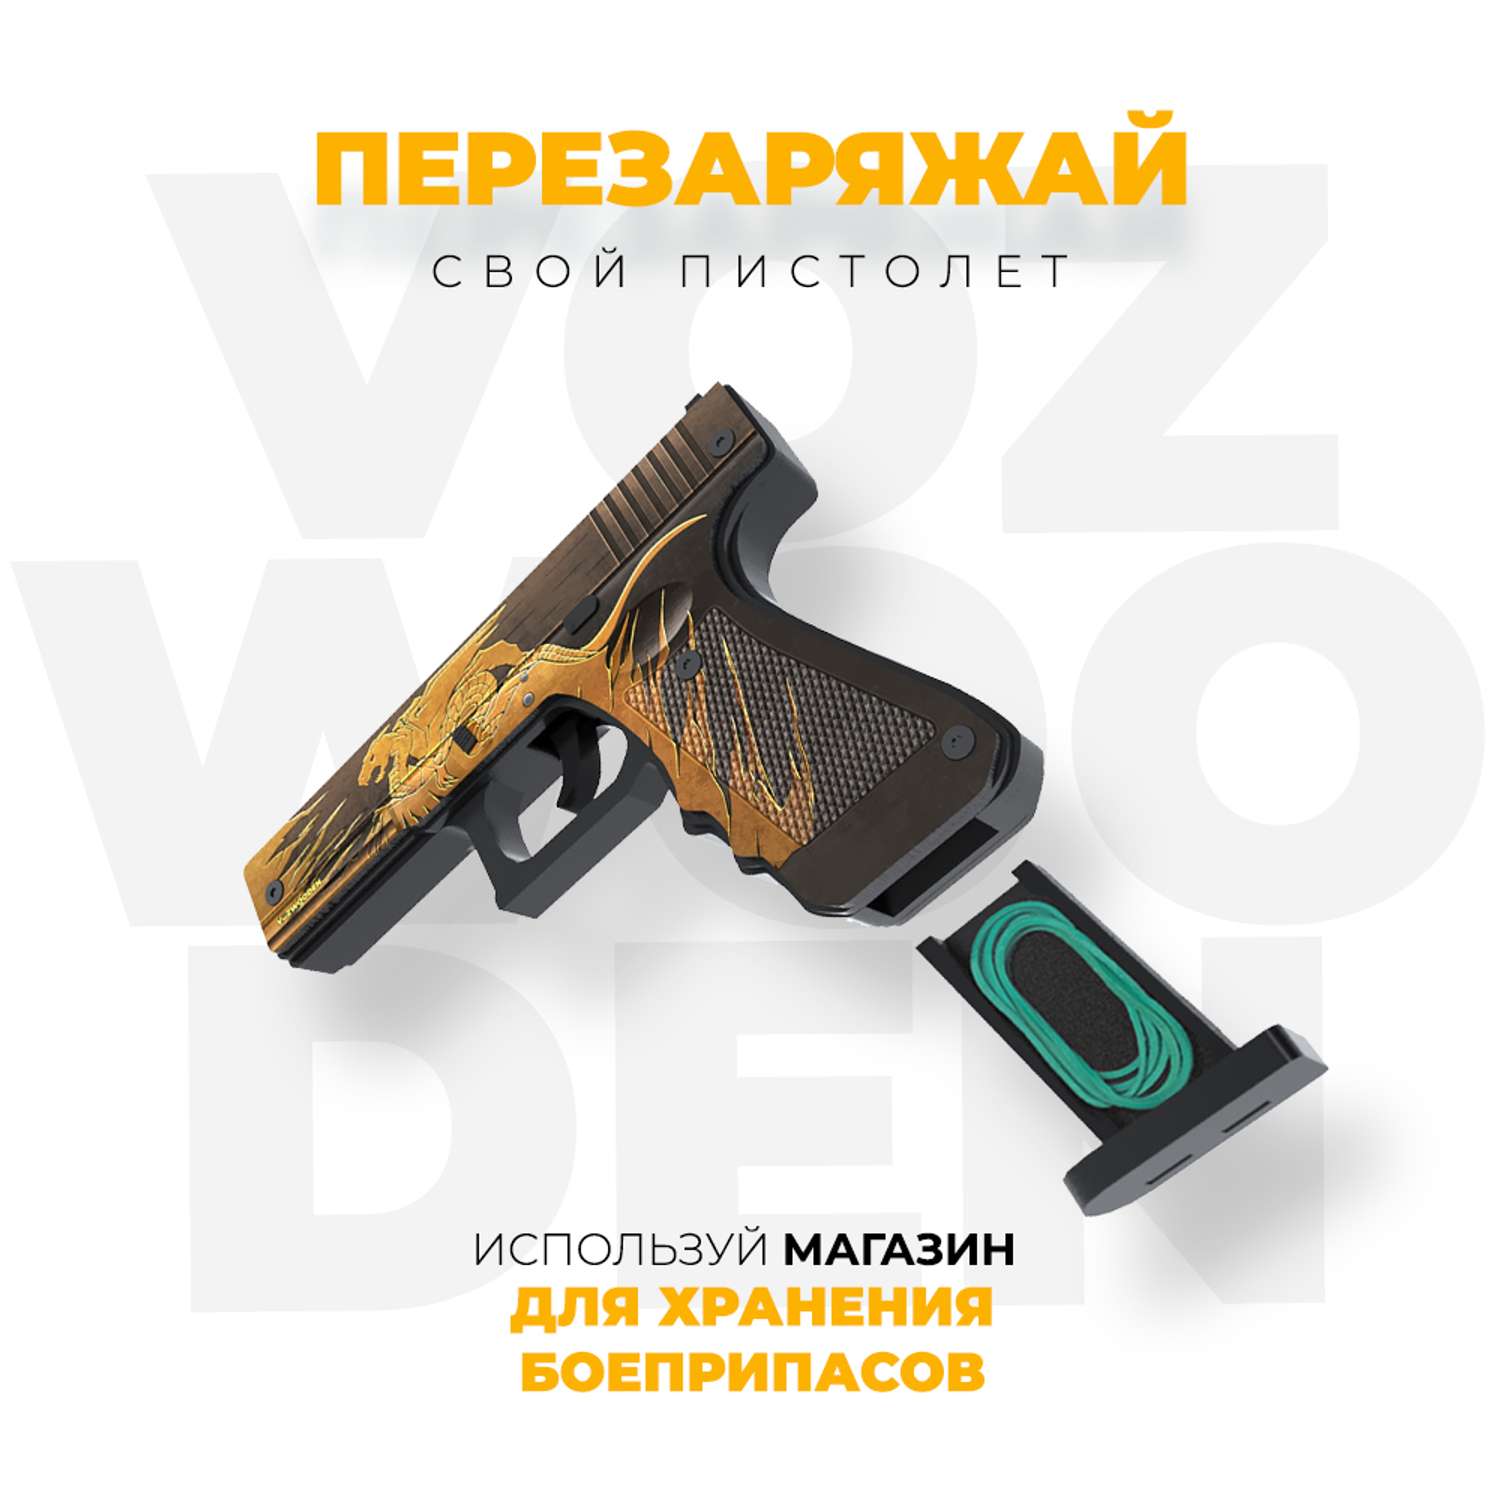 Пистолет VozWooden G22 Relic Standoff 2 резинкострел деревянный - фото 5